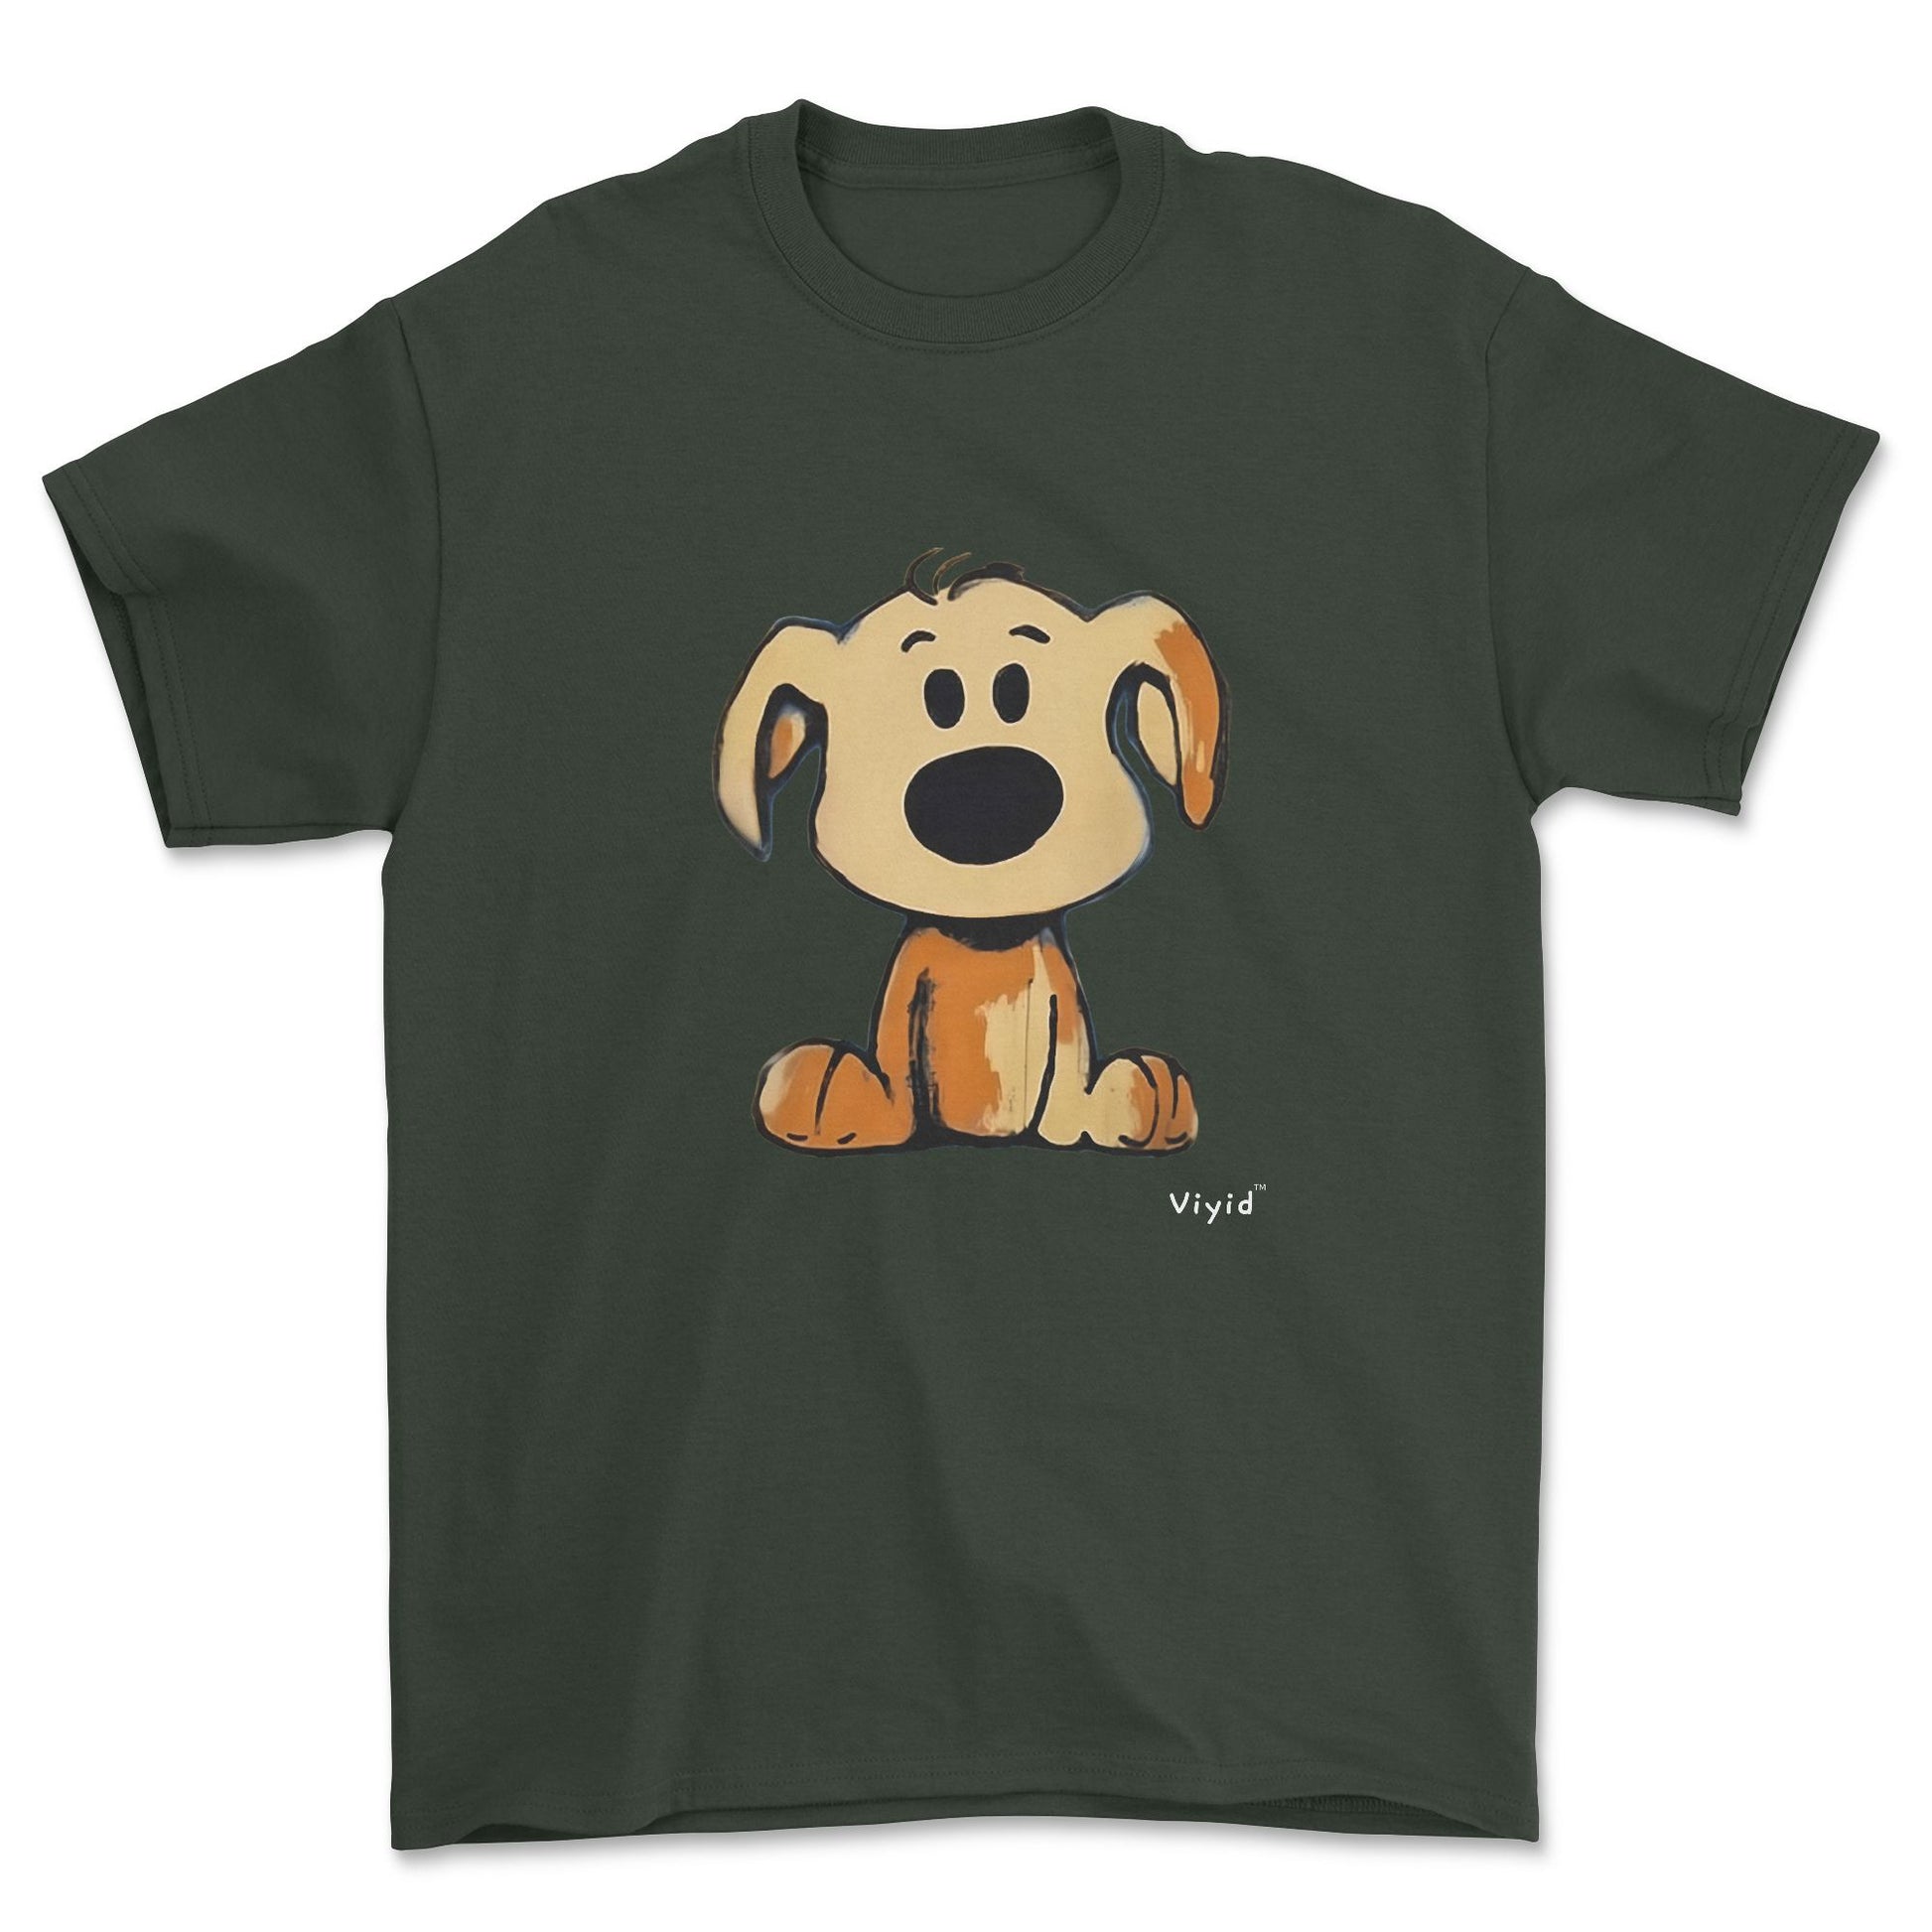 beagle cartoon dog adult t-shirt forest green